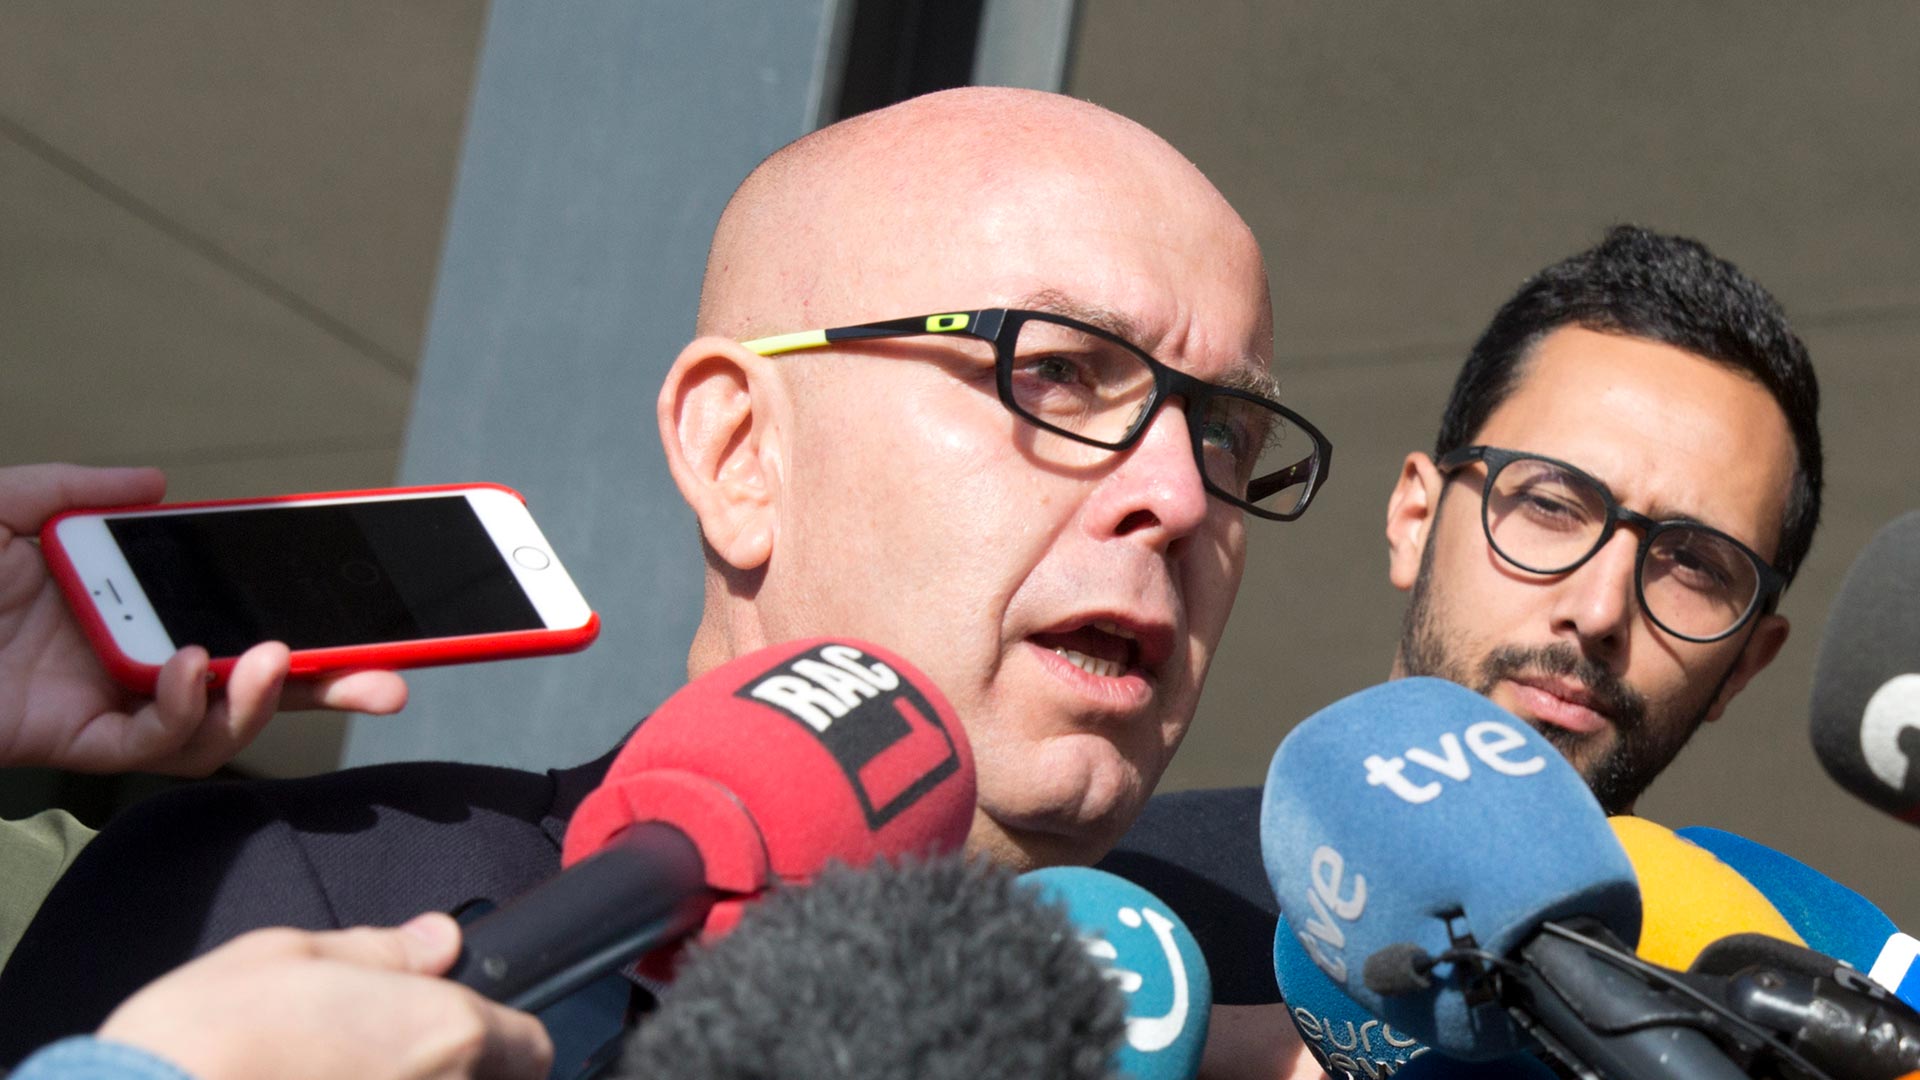 El abogado de Puigdemont declara el miércoles por blanqueo